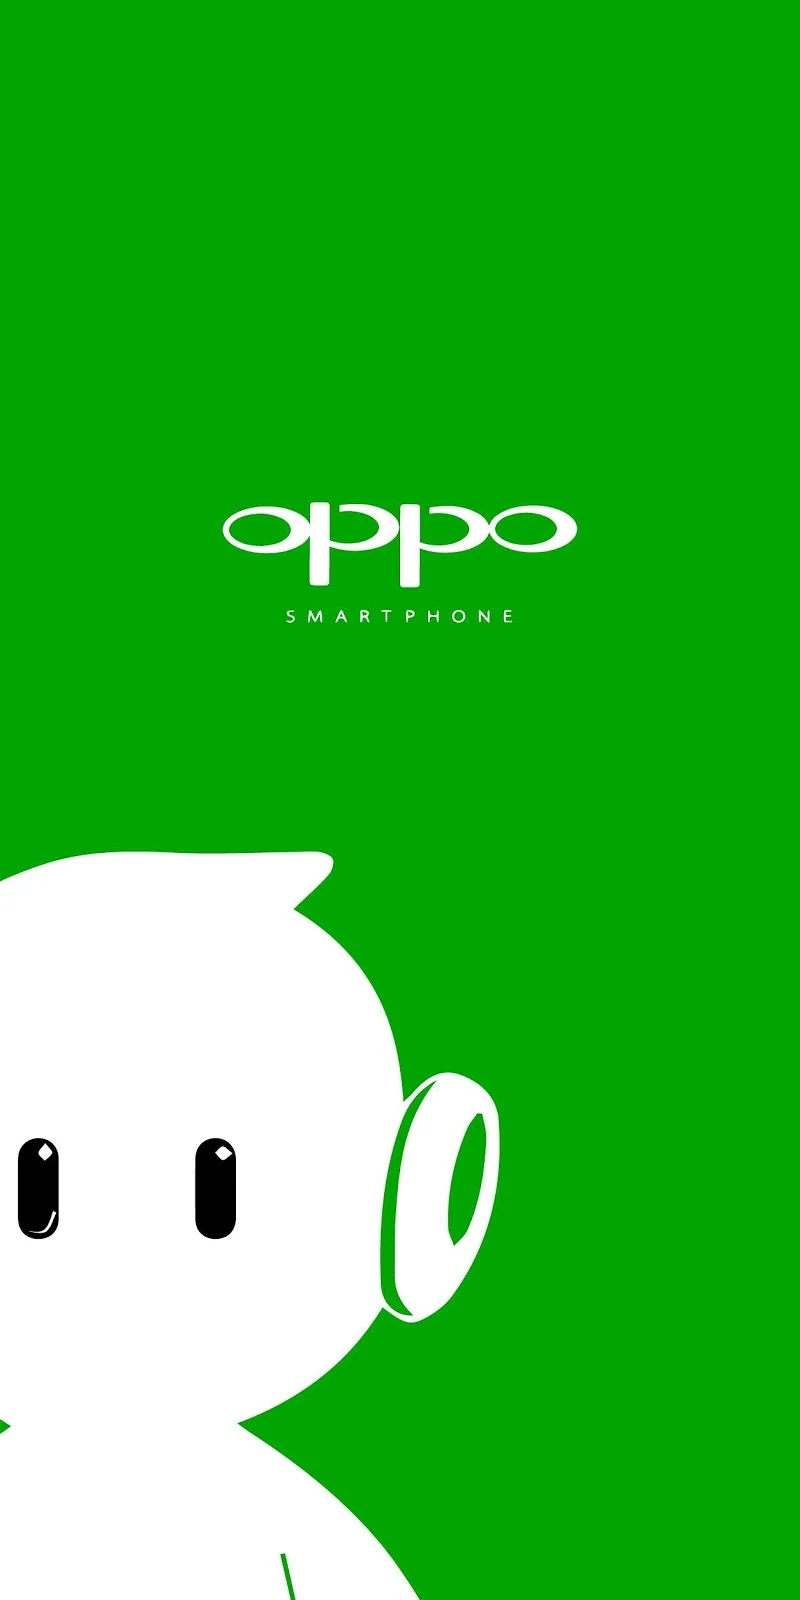 Phone logo oppo